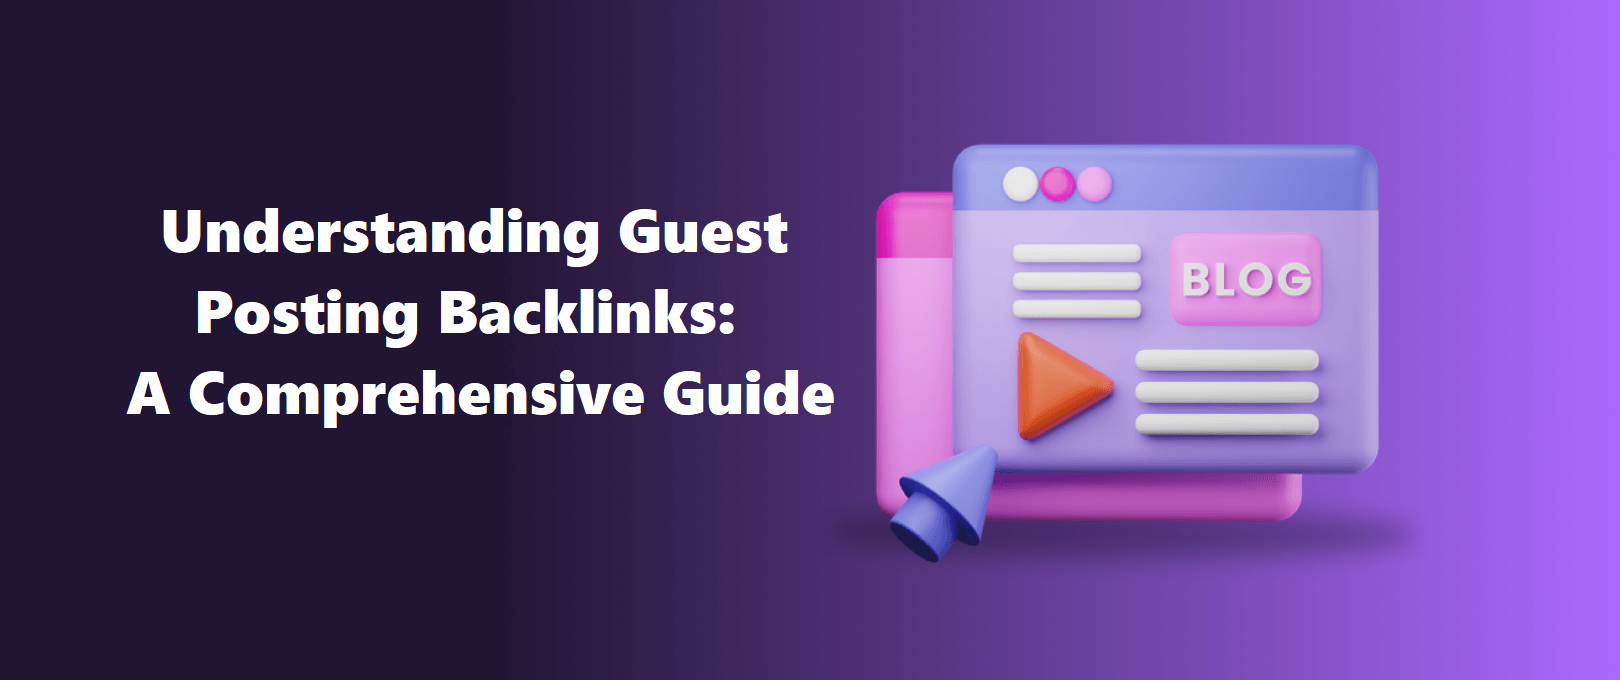 Understanding Guest Posting Backlinks: A Comprehensive Guide